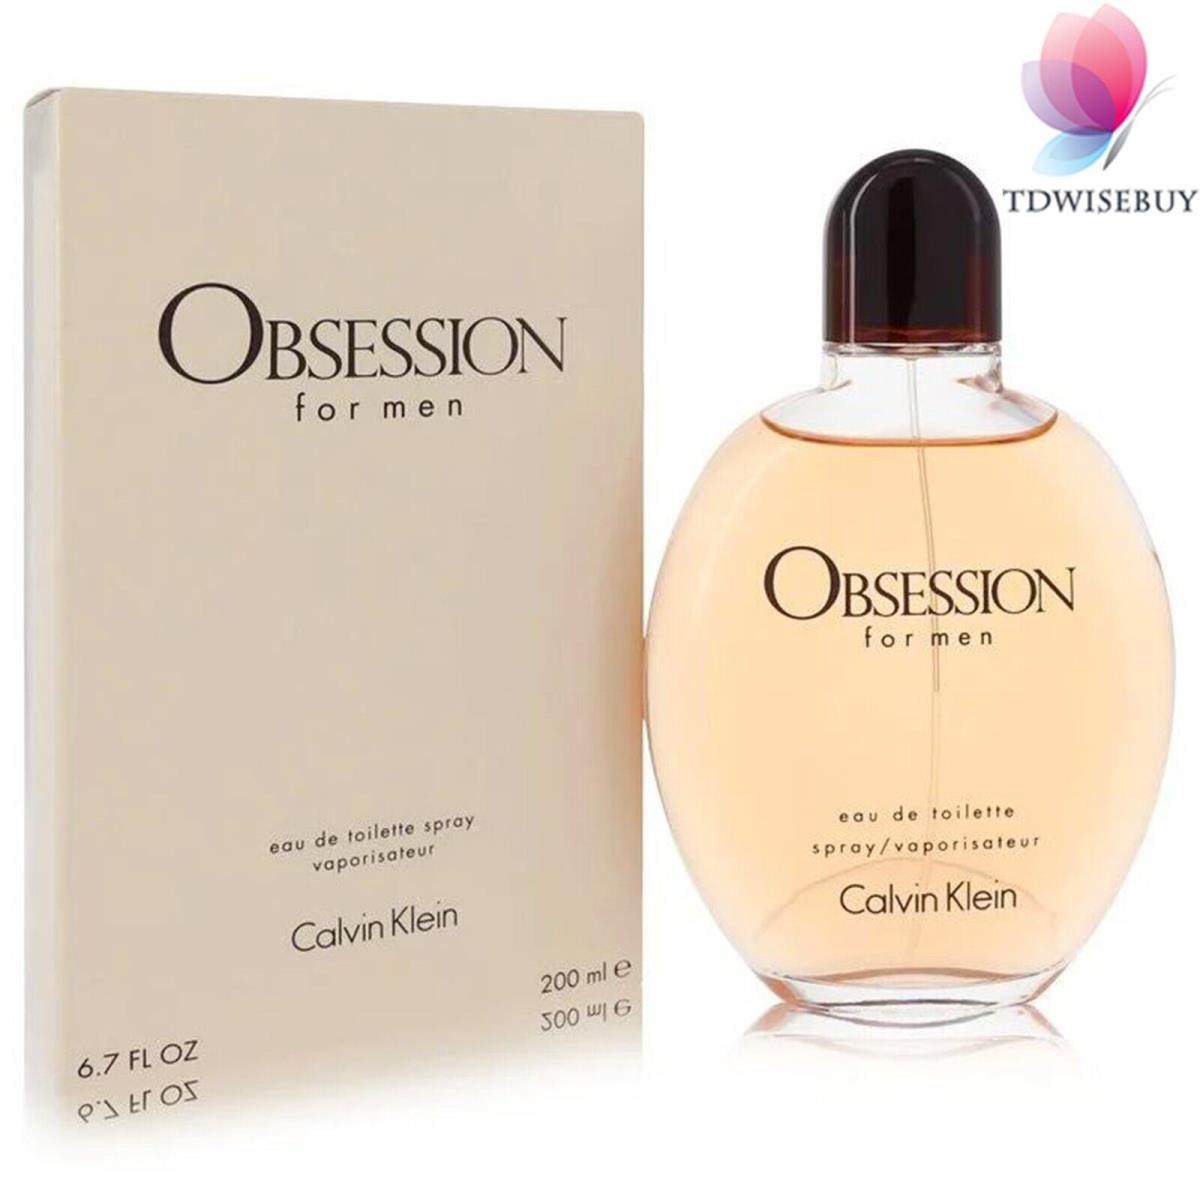 Obsession Cologne Men Perfume by Calvin Klein Eau De Toilette Spray 6.7 oz Edt